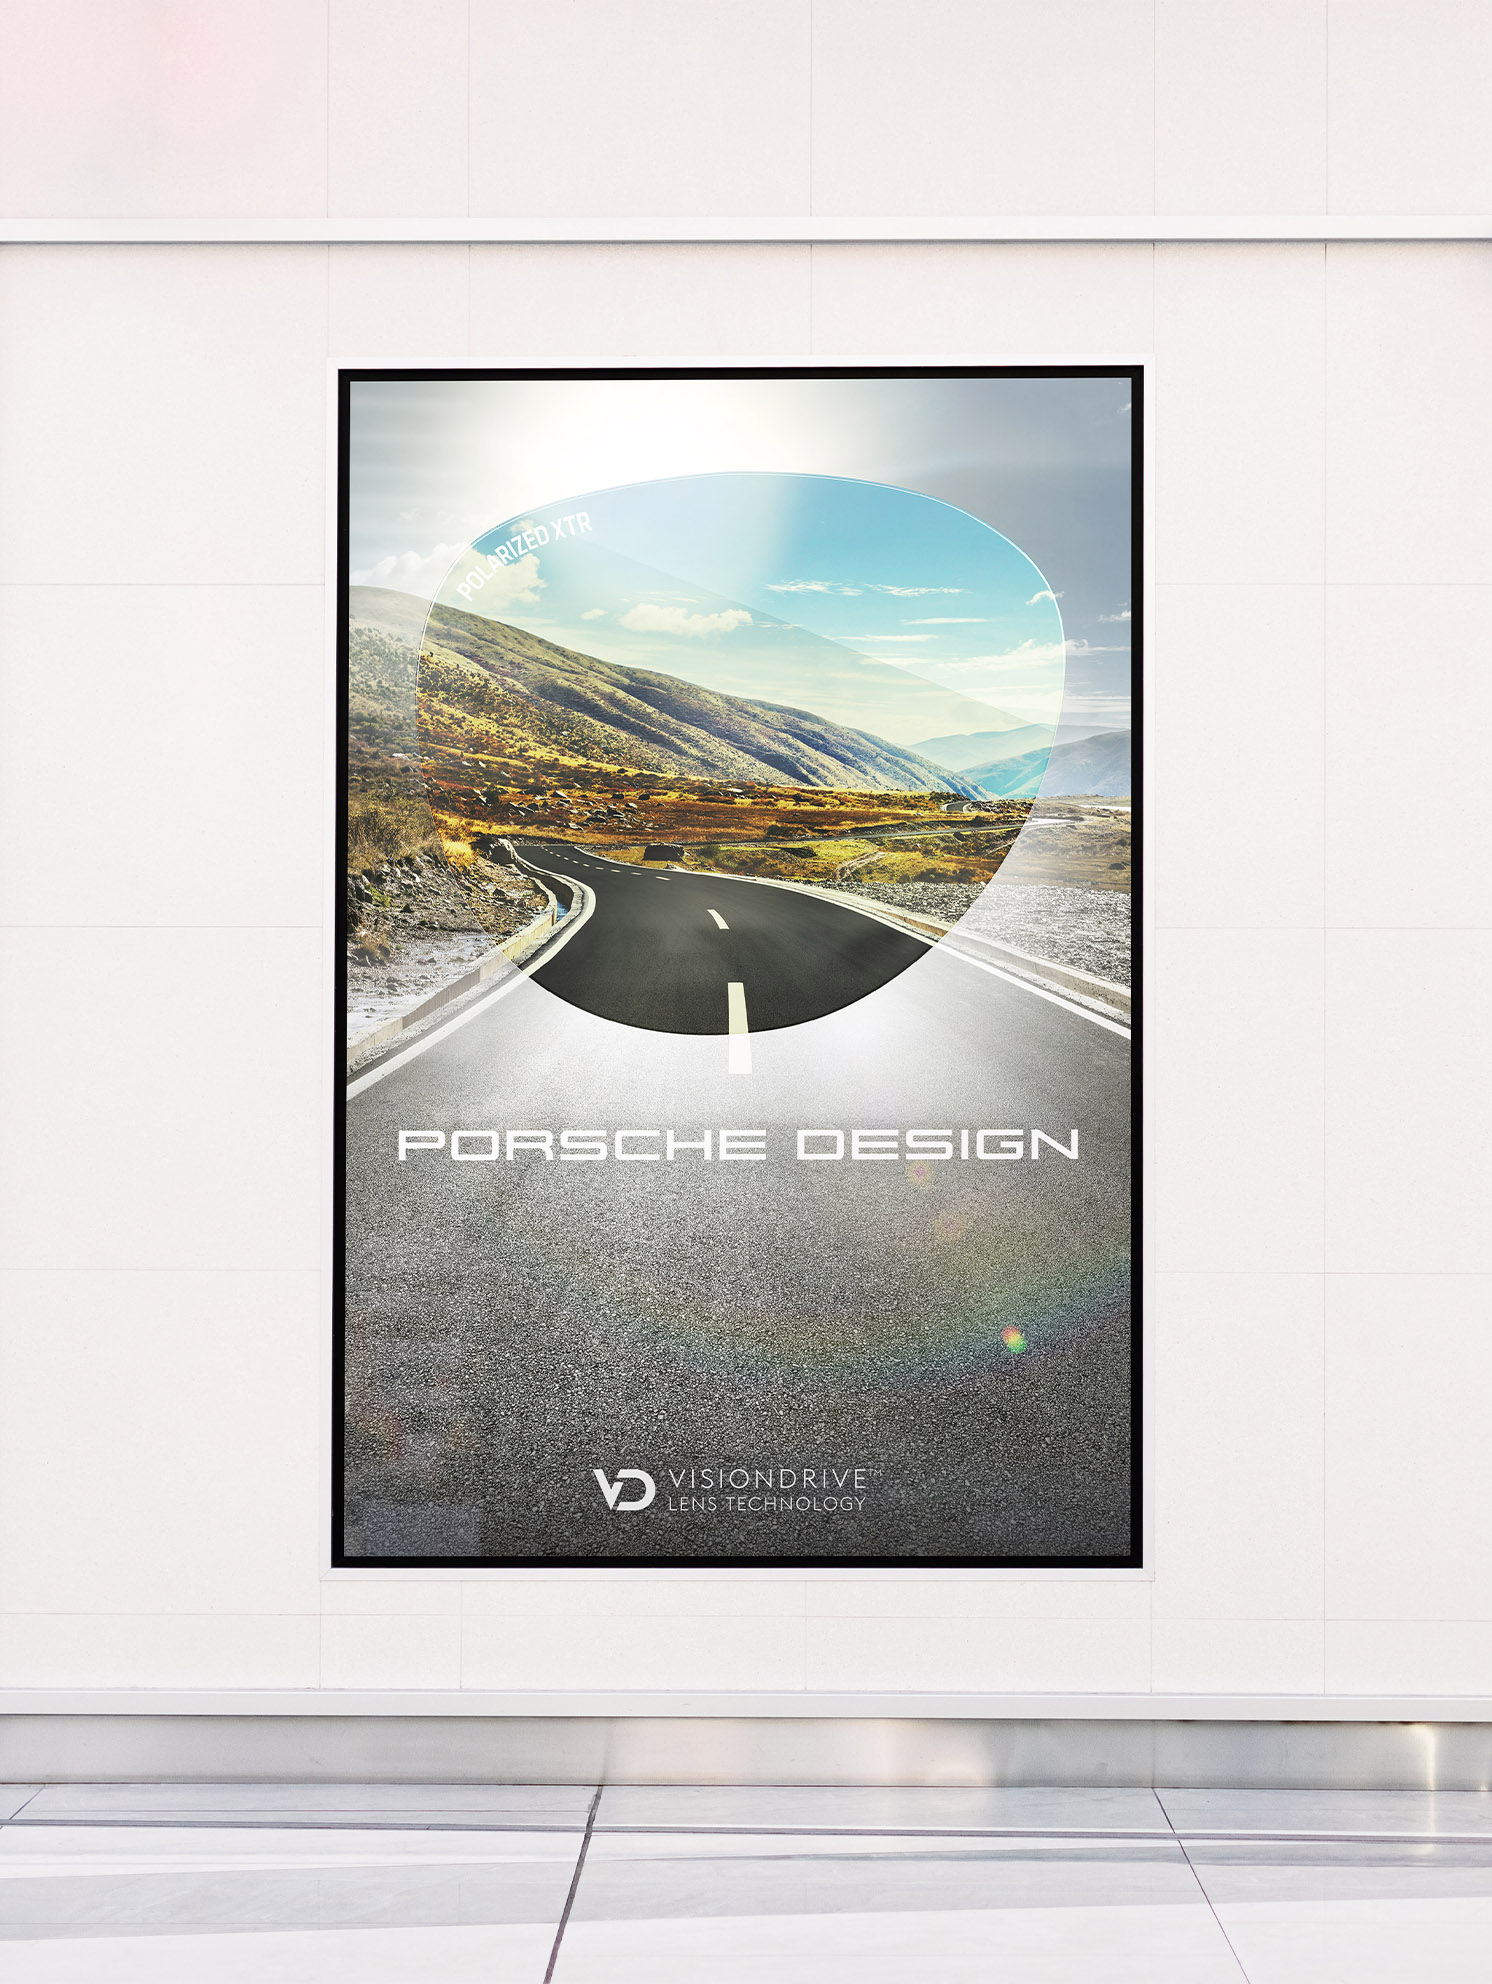 2030-vision-drive-lens-technology-porsche-design